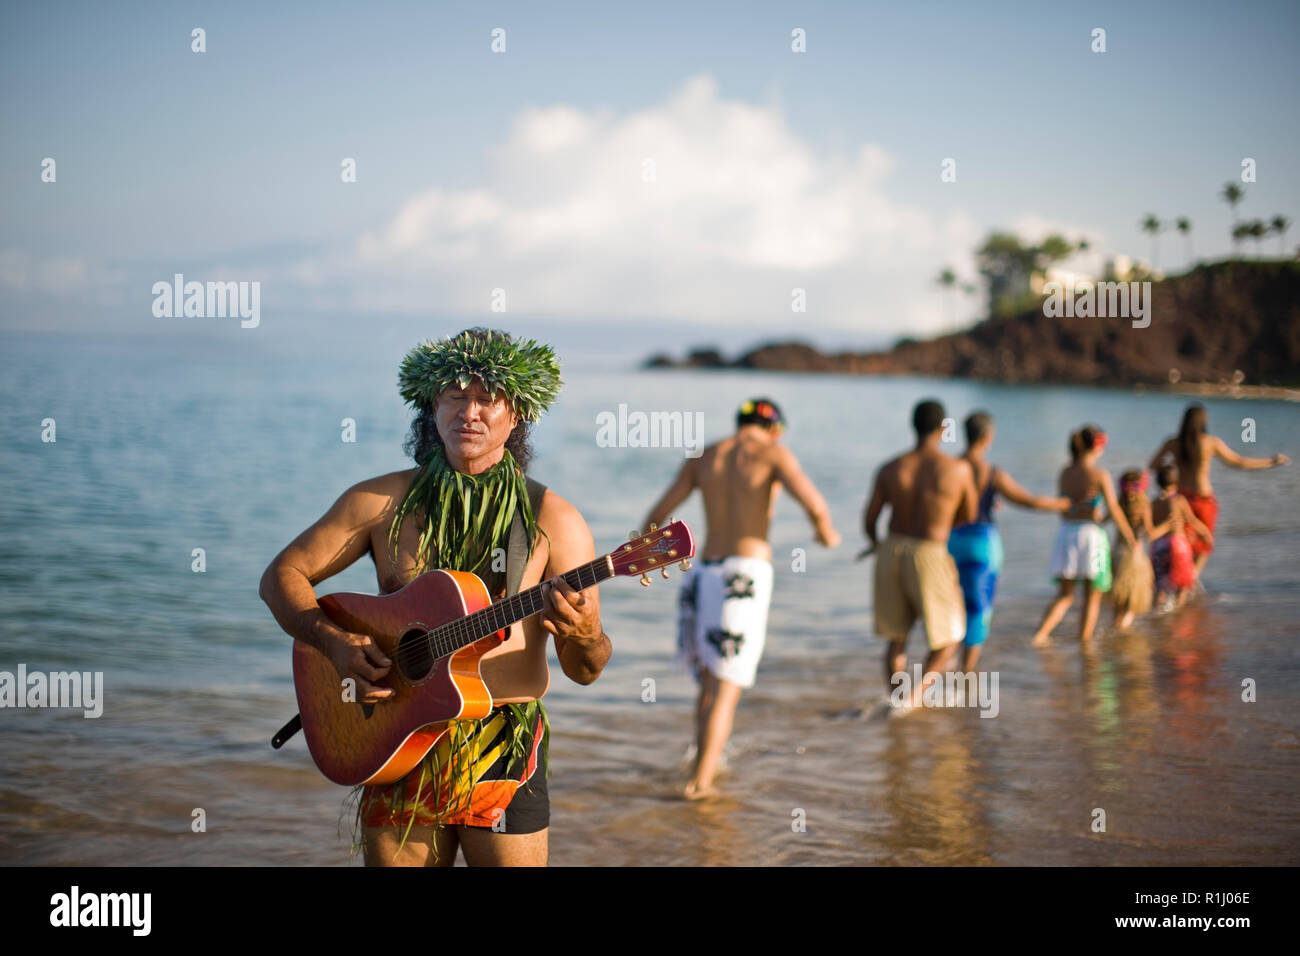 L'homme qui joue de la guitare sur la plage, avec des danseurs de hula en arrière-plan. Banque D'Images